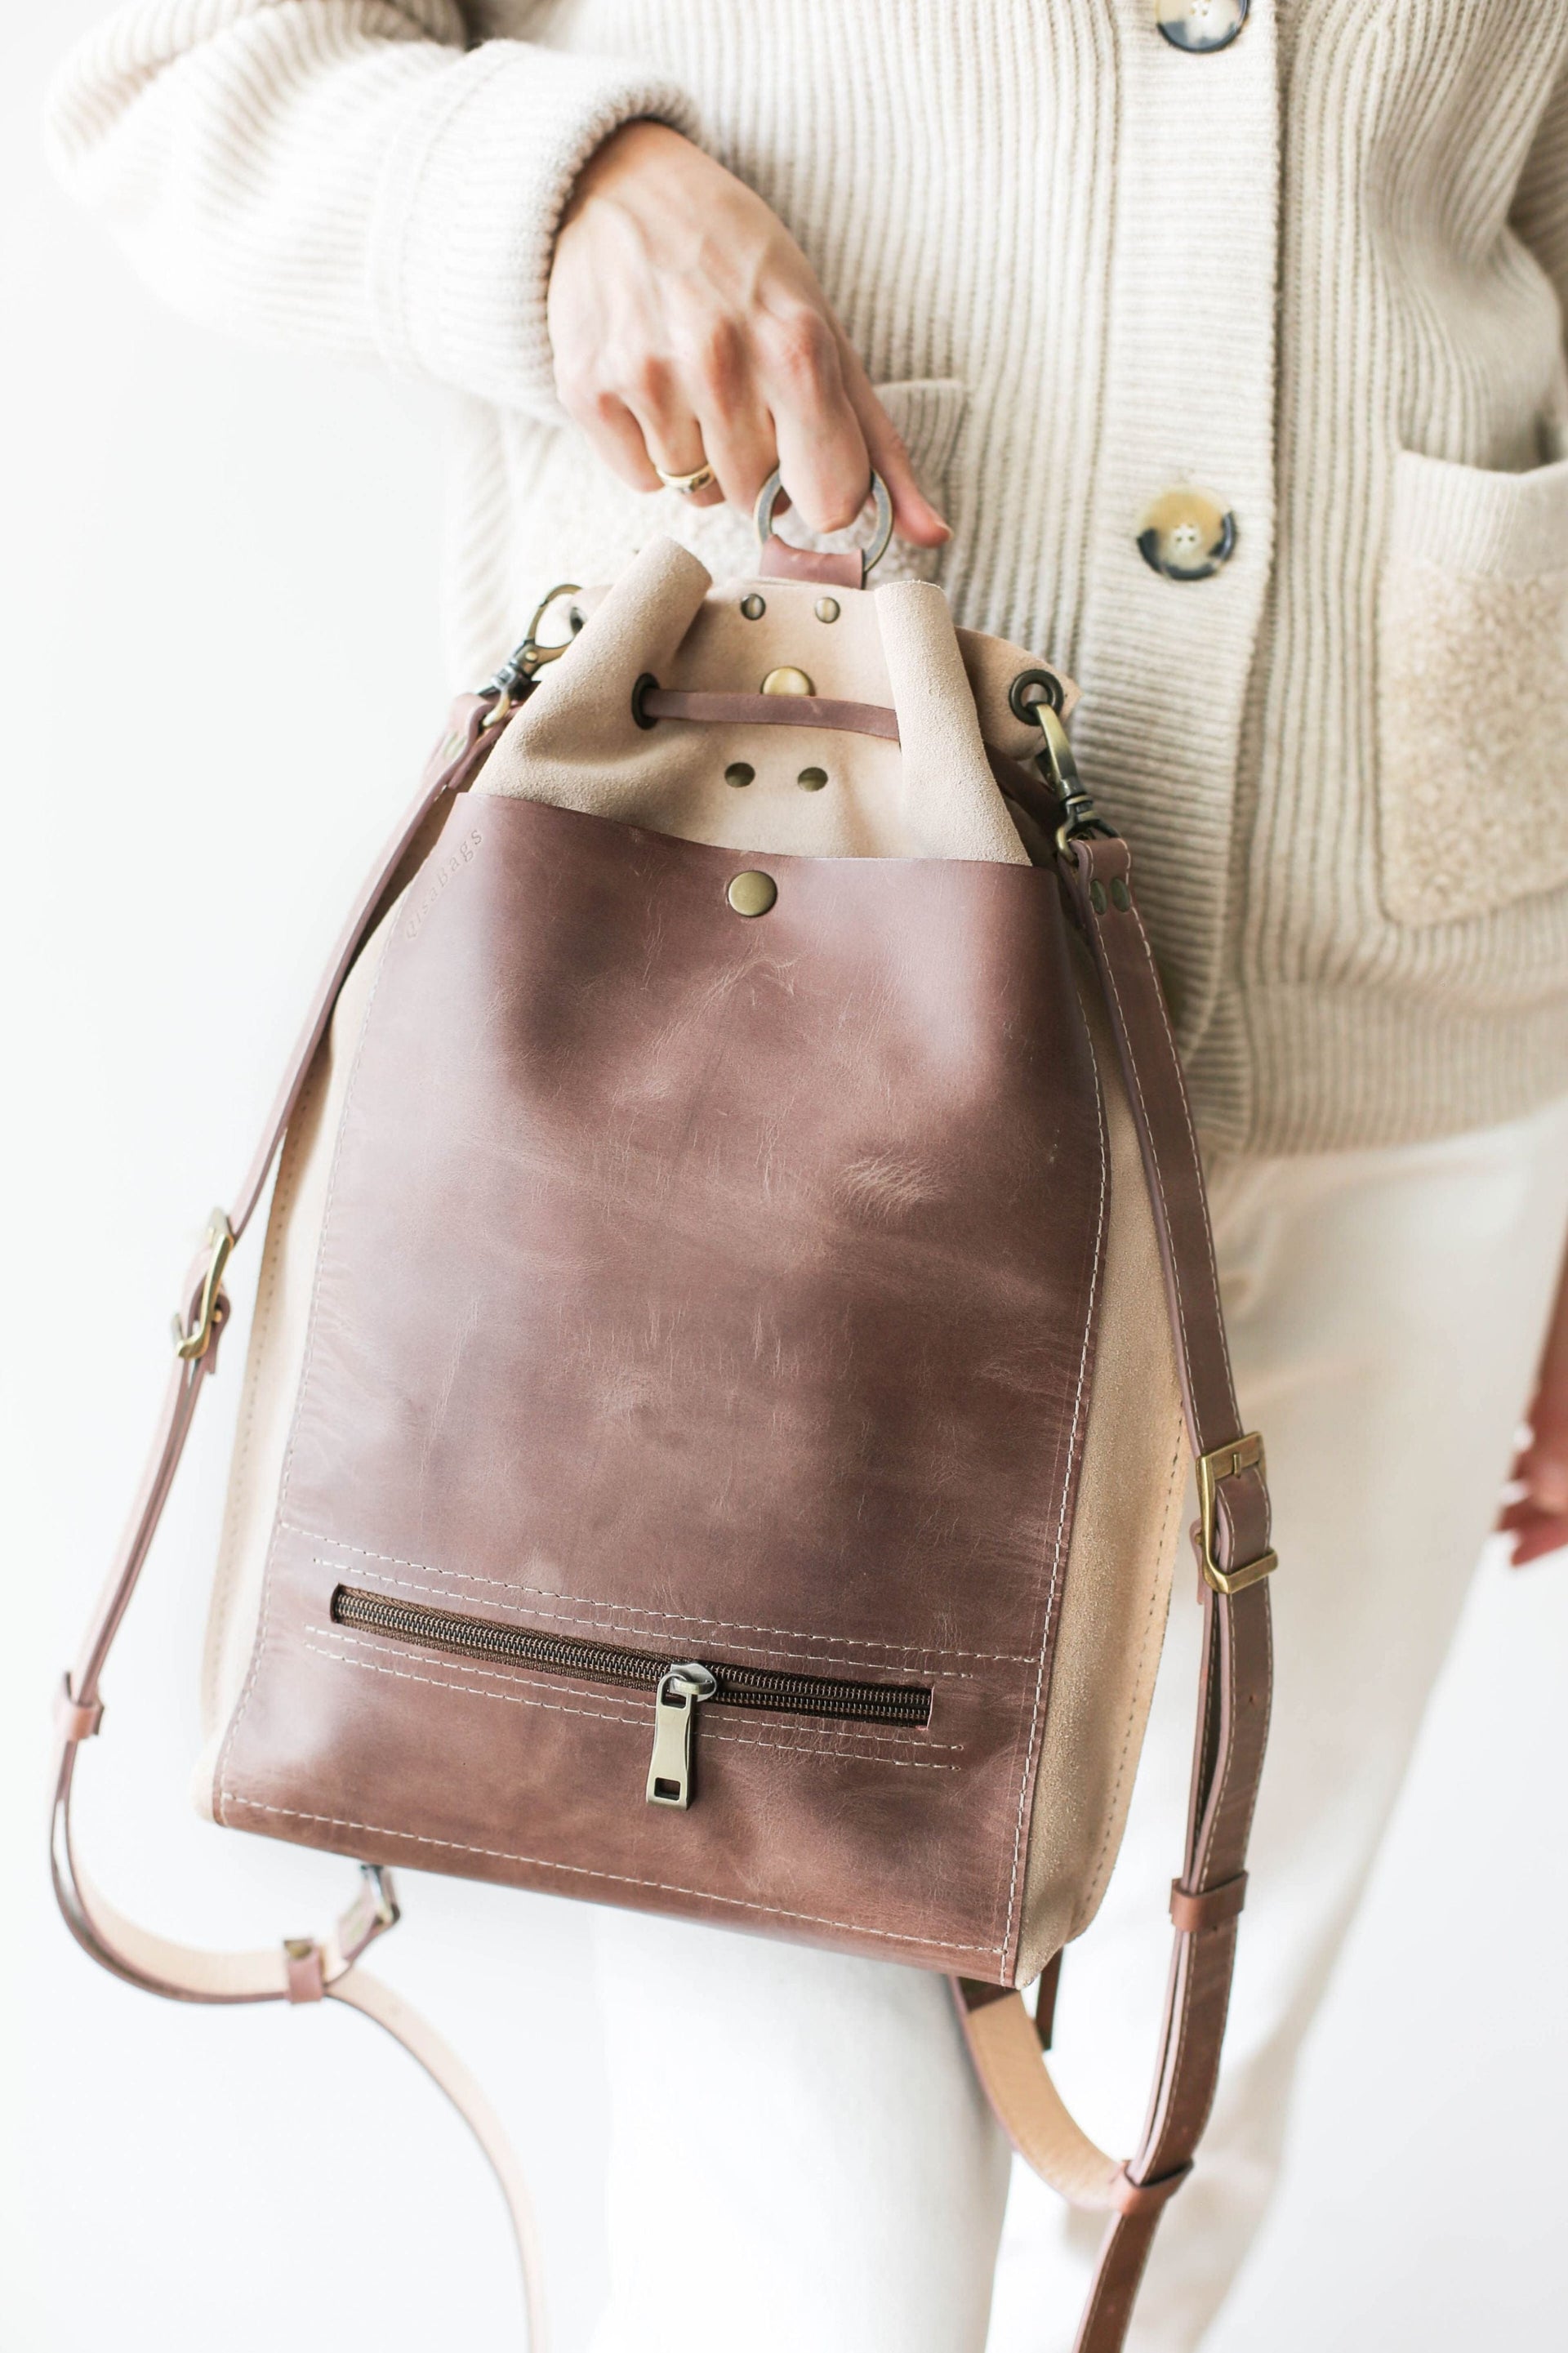 Designer Leather Handbag for Women